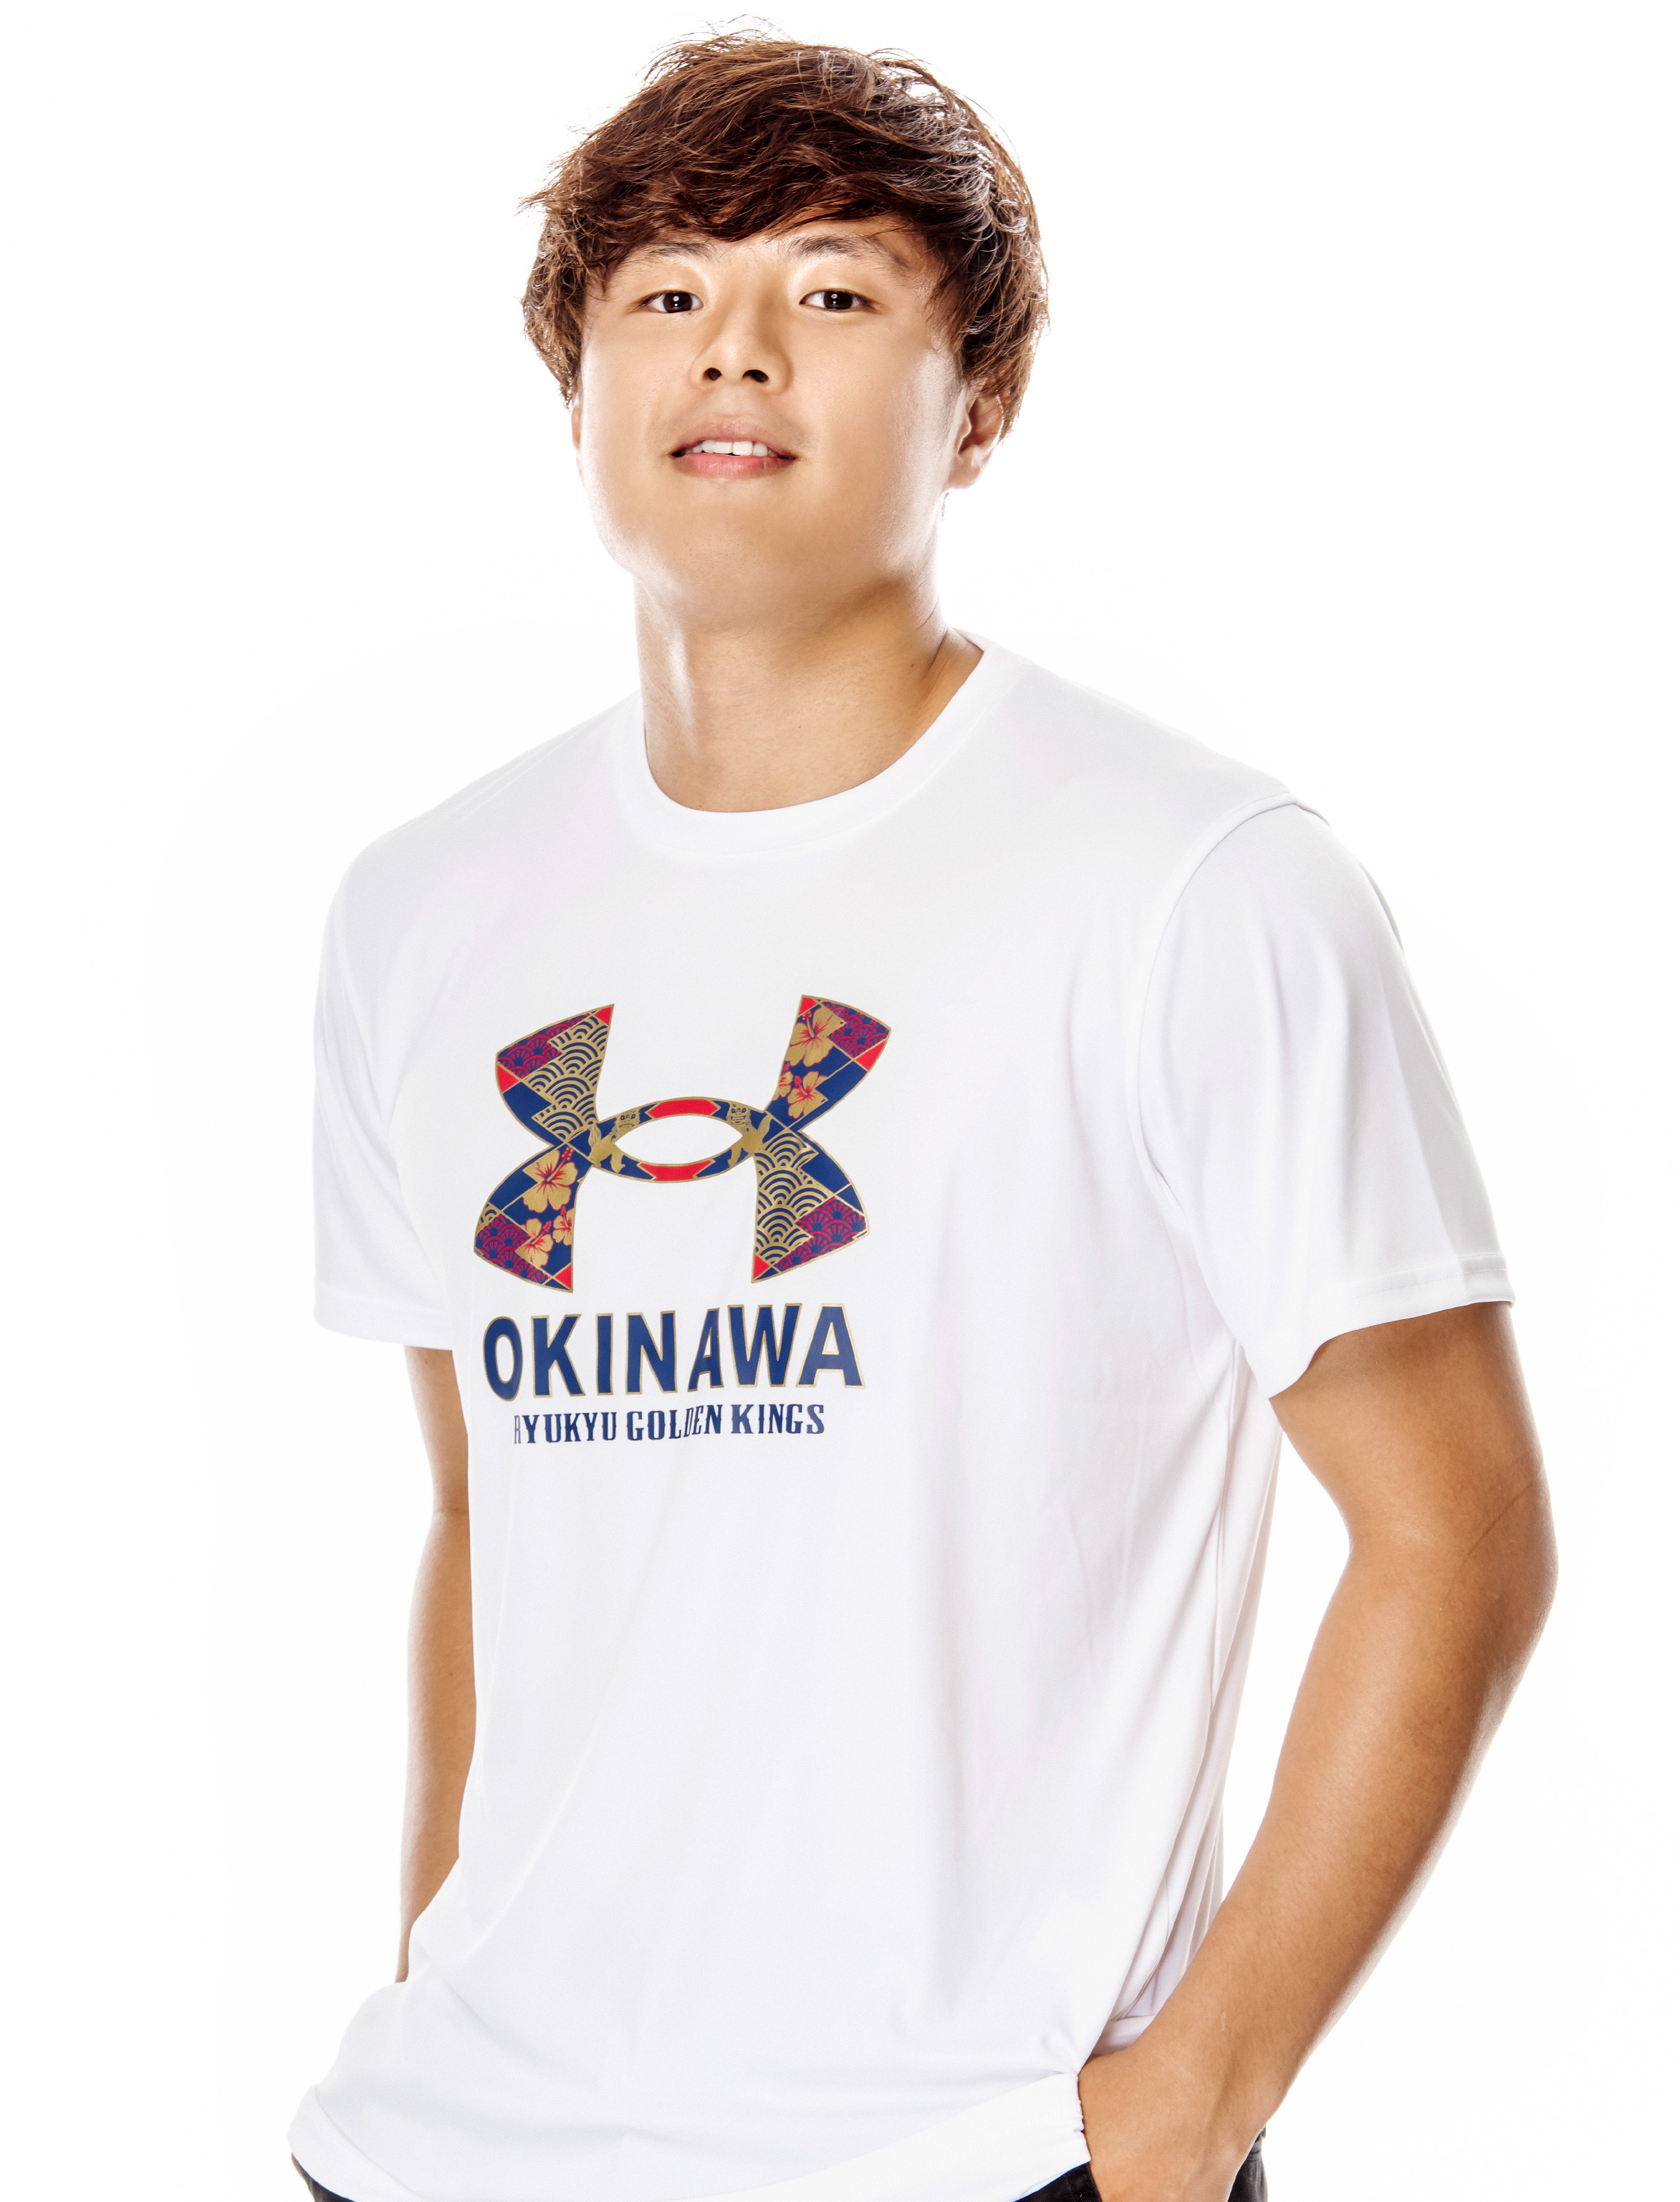 琉球ゴールデンキングス、沖縄×和柄をイメージした新グッズを発表…8月22日より販売開始 | バスケットボールキング